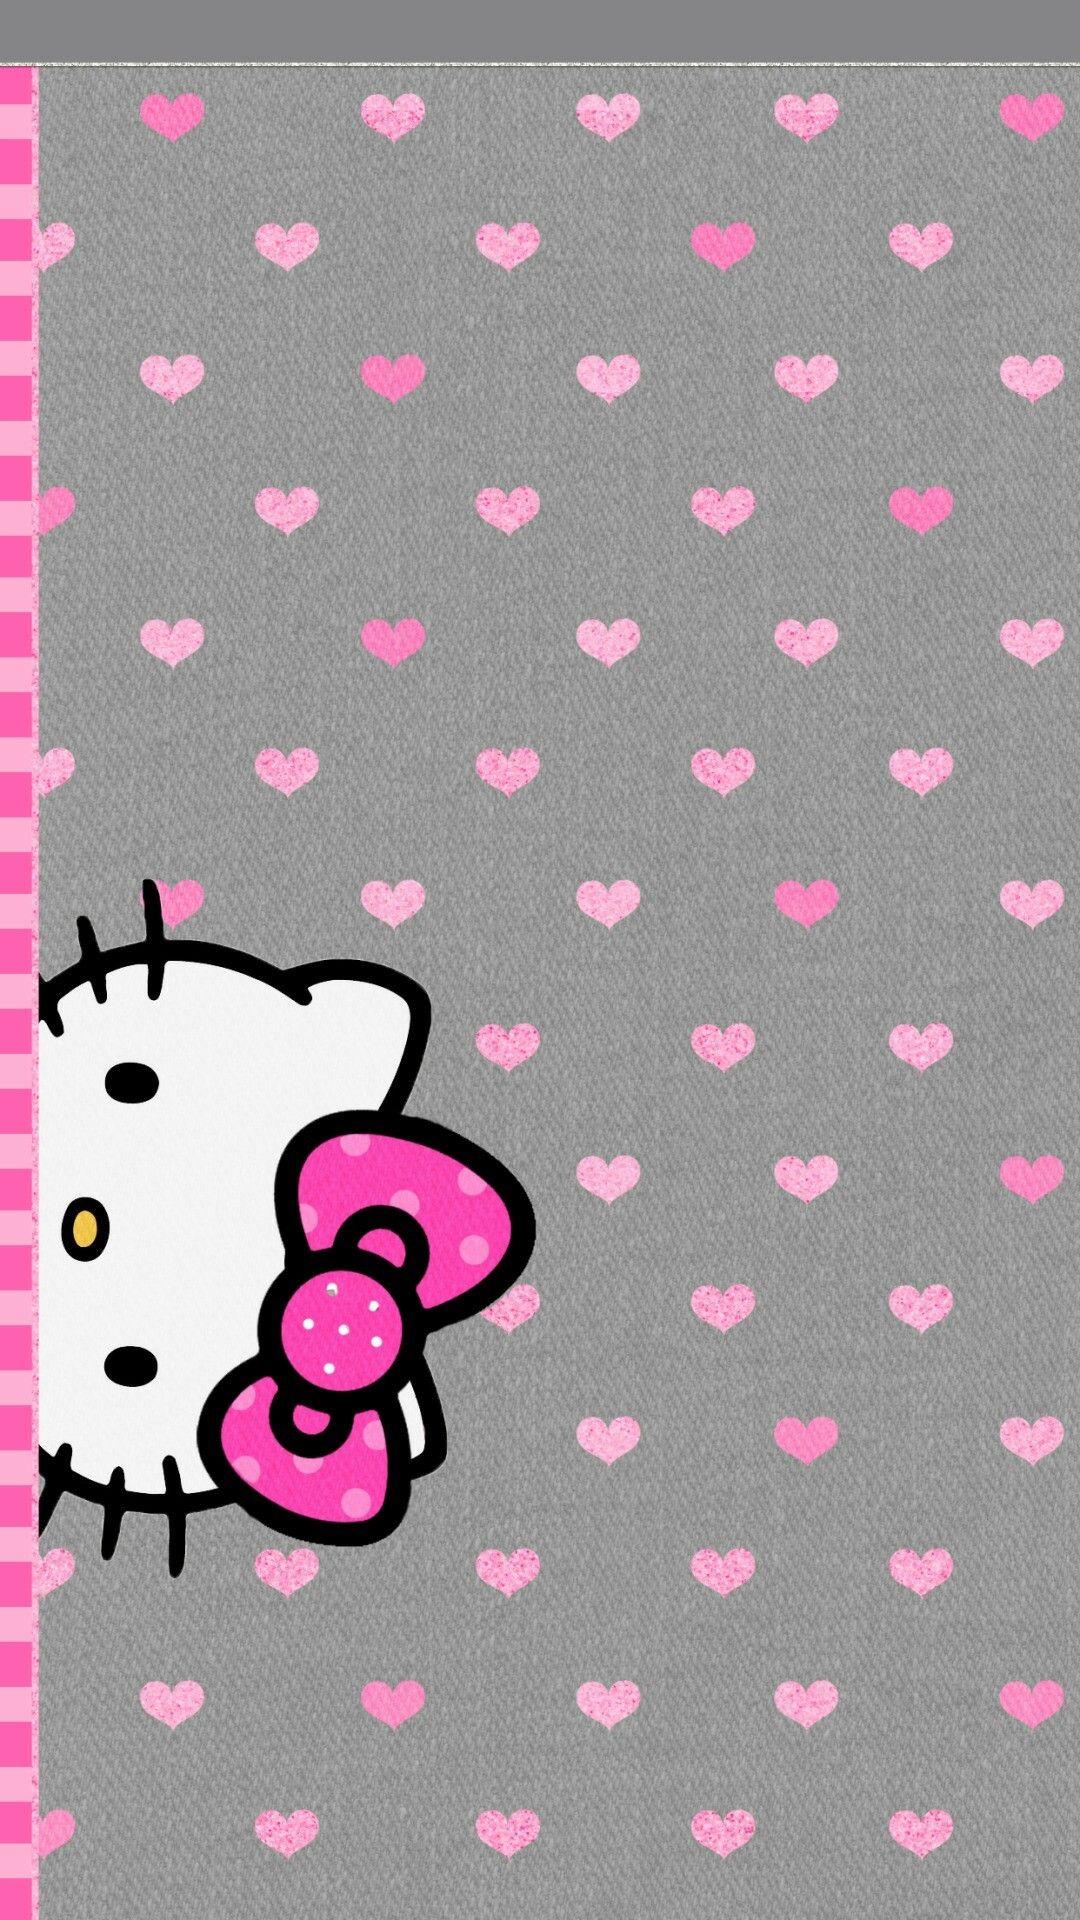 Thư viện 1000 mẫu Cute background Hello Kitty Hình nền cho fan Hello Kitty